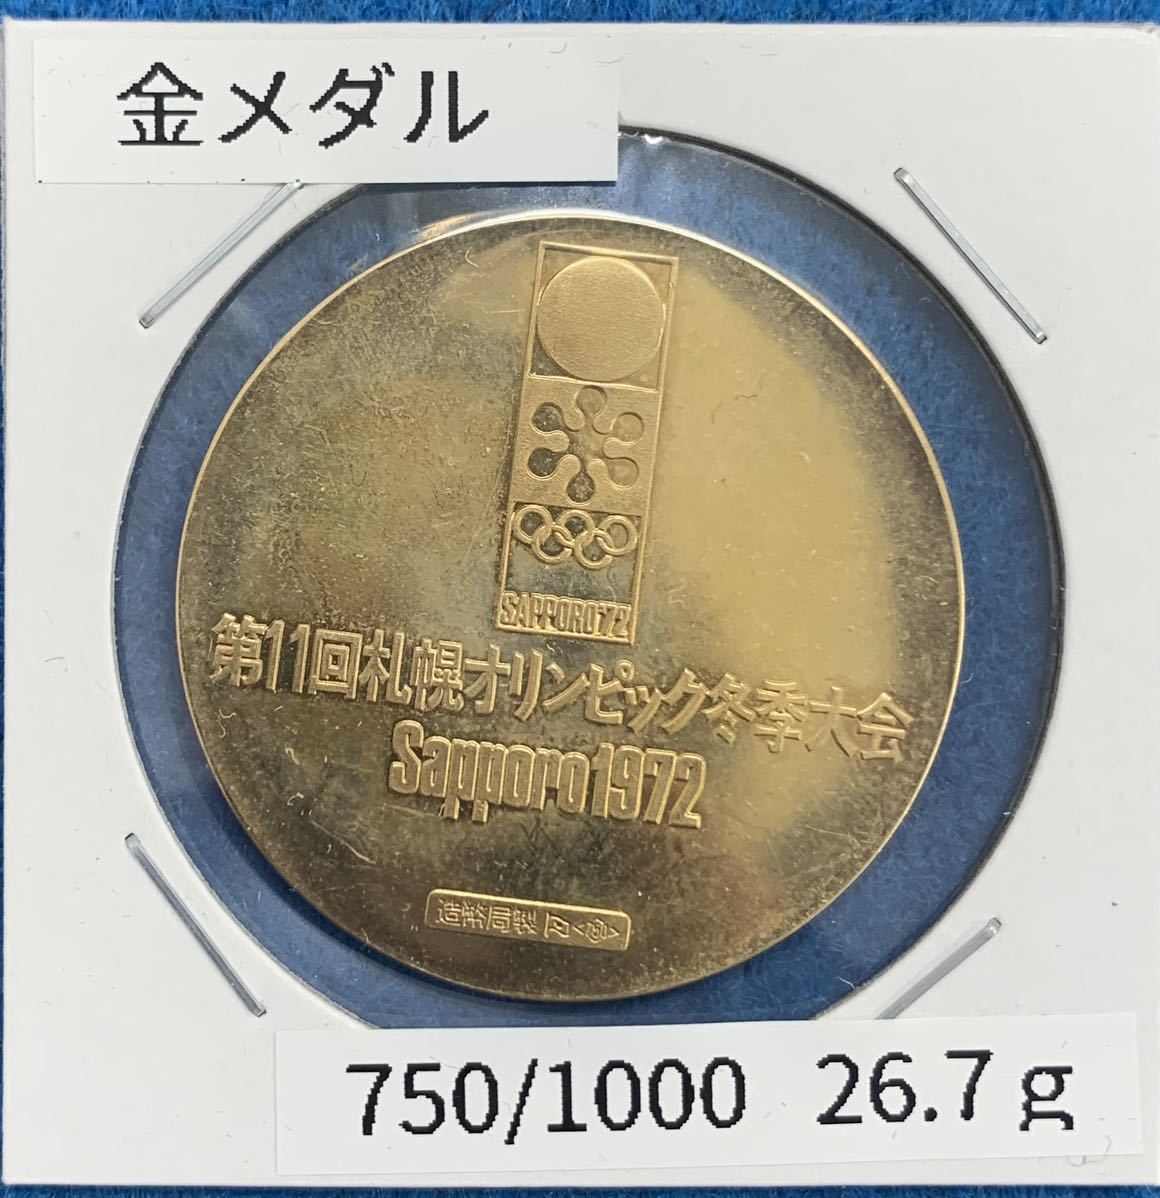 18K金メダル/第11回札幌オリンピック 冬季大会/重量約26.7g_画像1